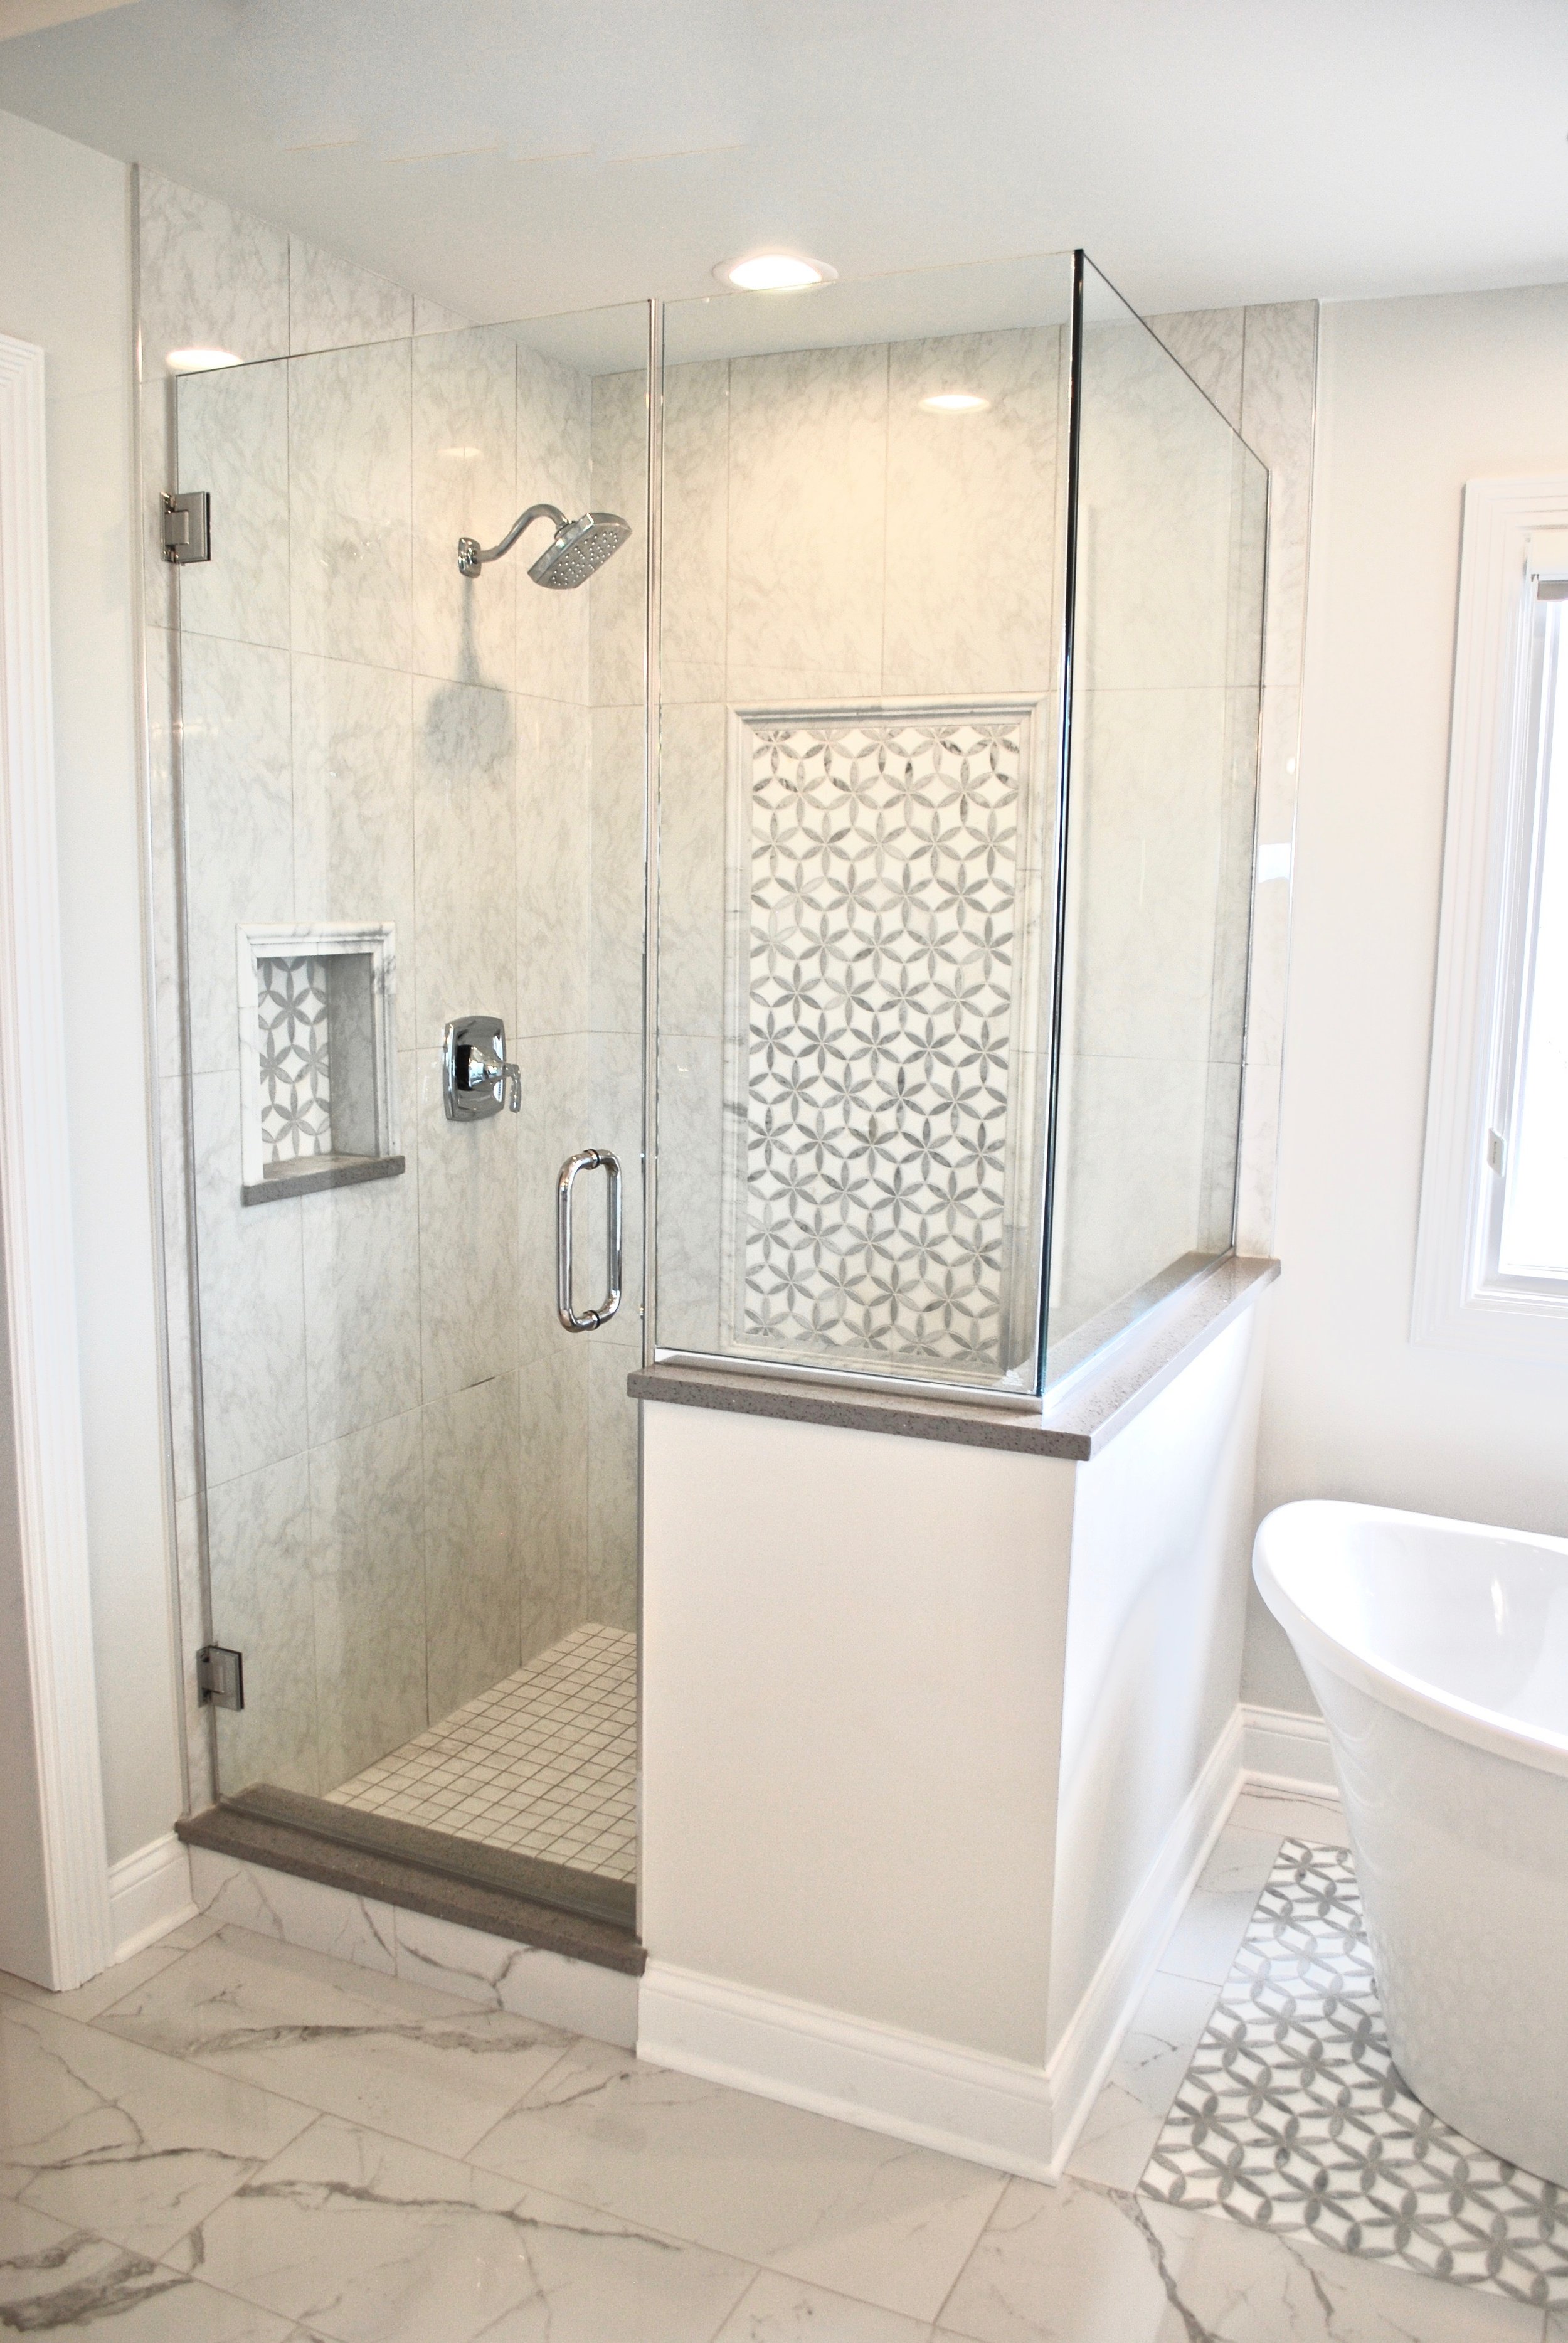 Shower & Tub Remodel in Master Bathroom Updating - AFTER.jpg